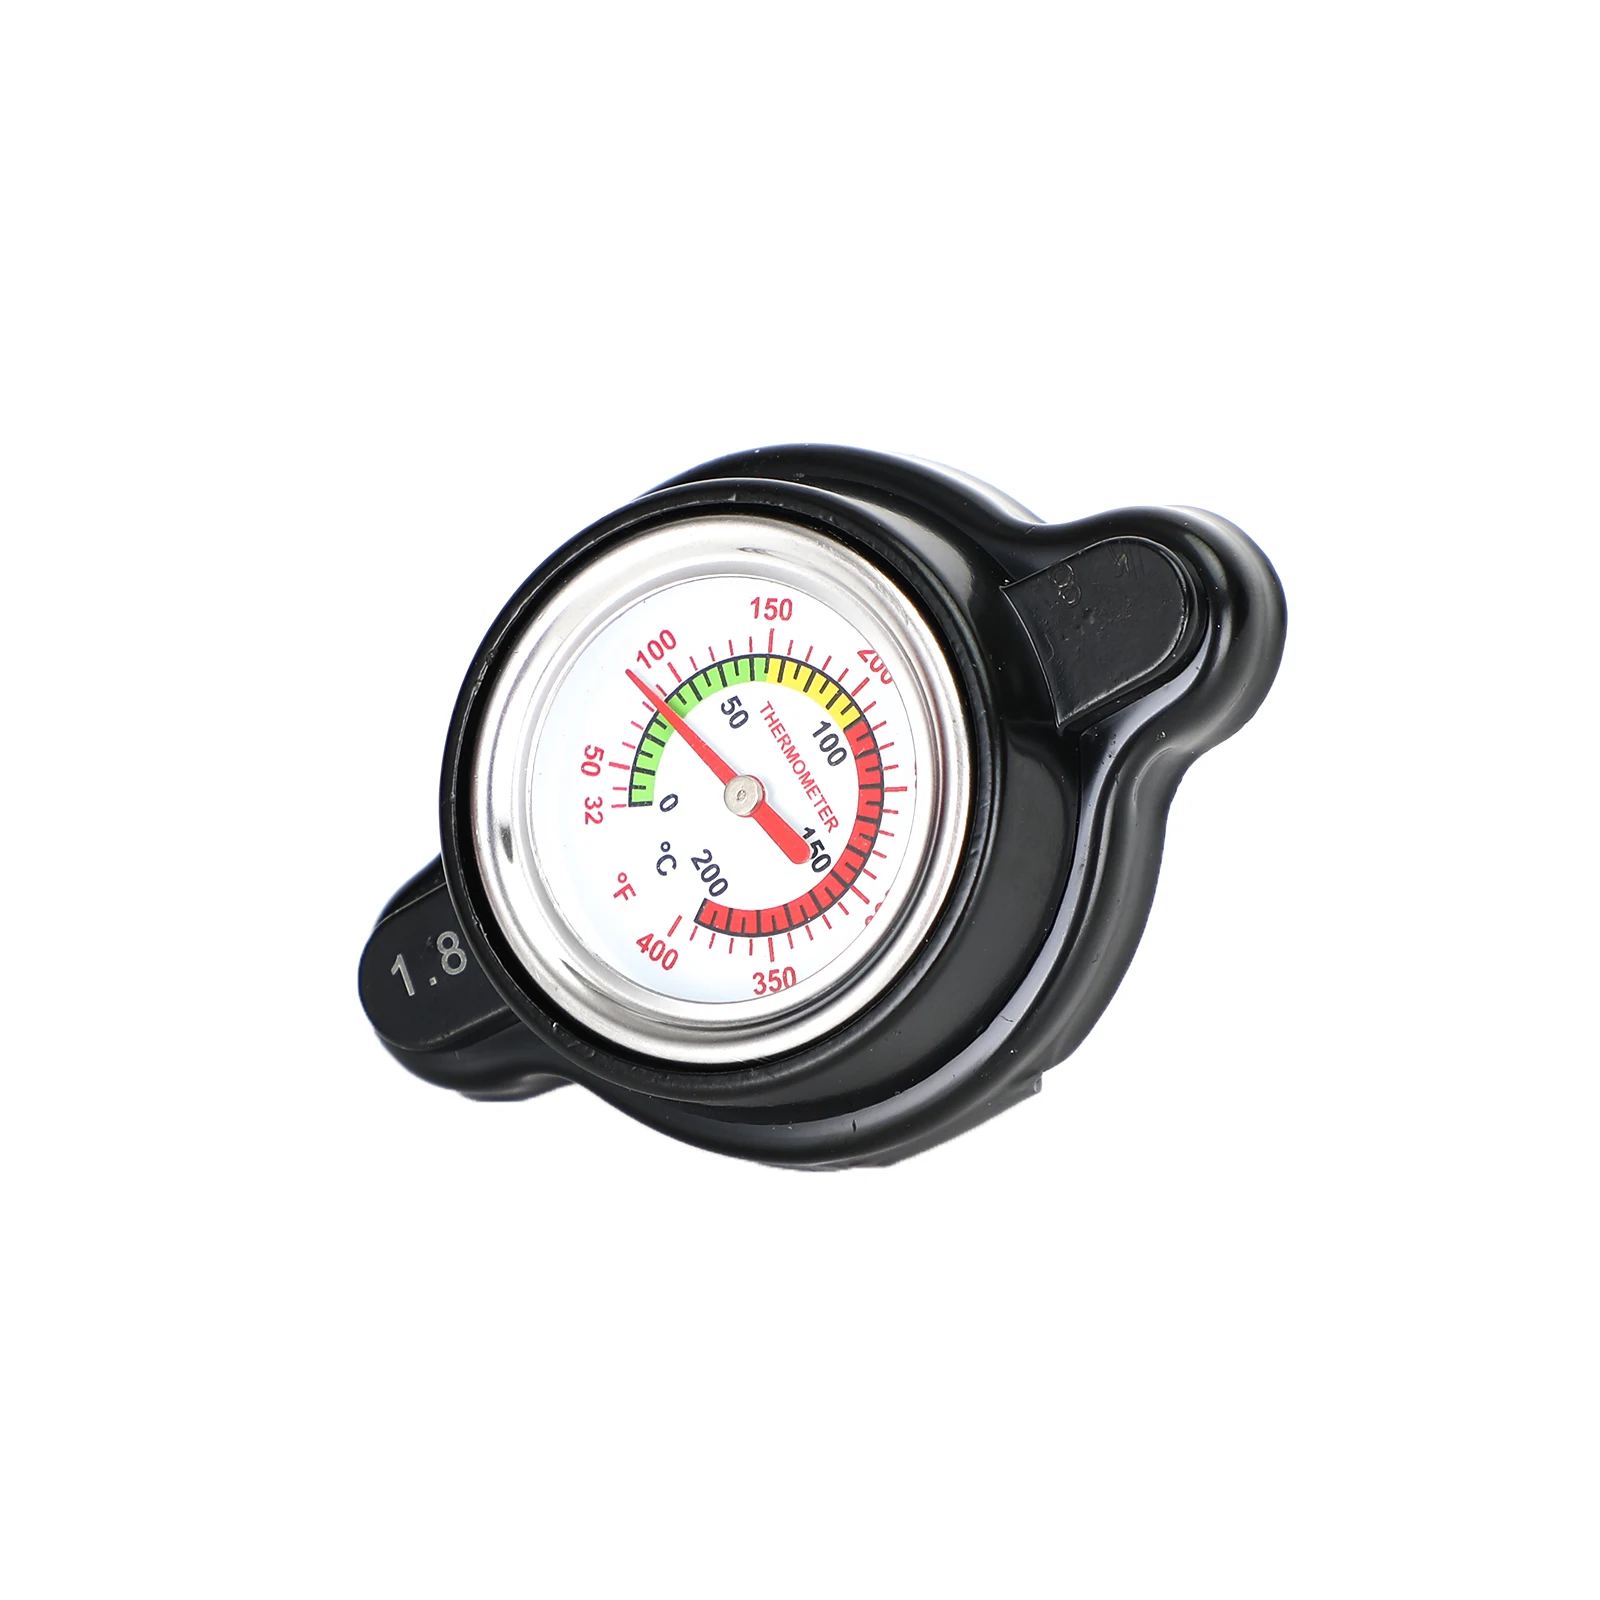 Fits Tusk High Pressure Radiator Cap with Temperature Gauge 1.8 Bar Honda CRF450R 2002-2019 